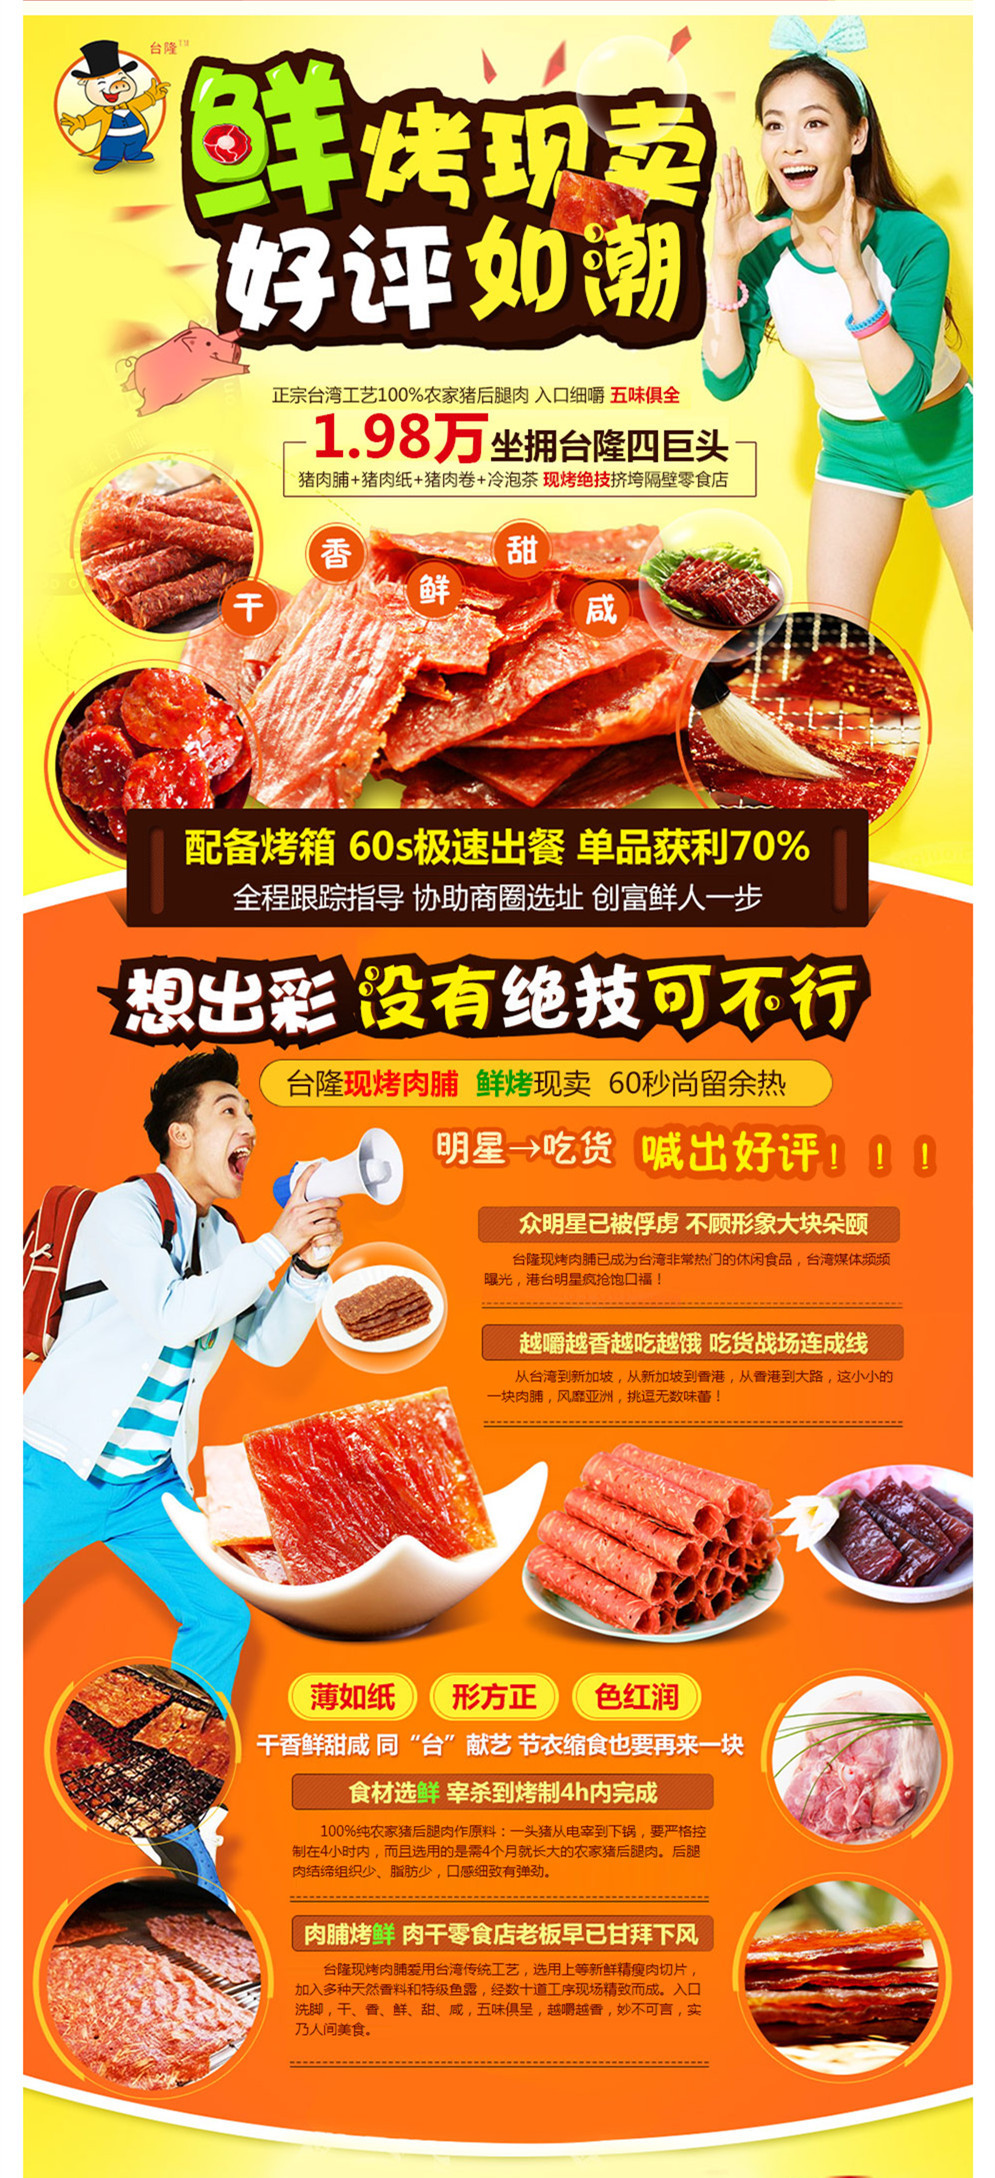 台隆现烤台湾猪肉纸加盟连锁,100%台湾工艺现烤杏仁猪肉纸加盟_1